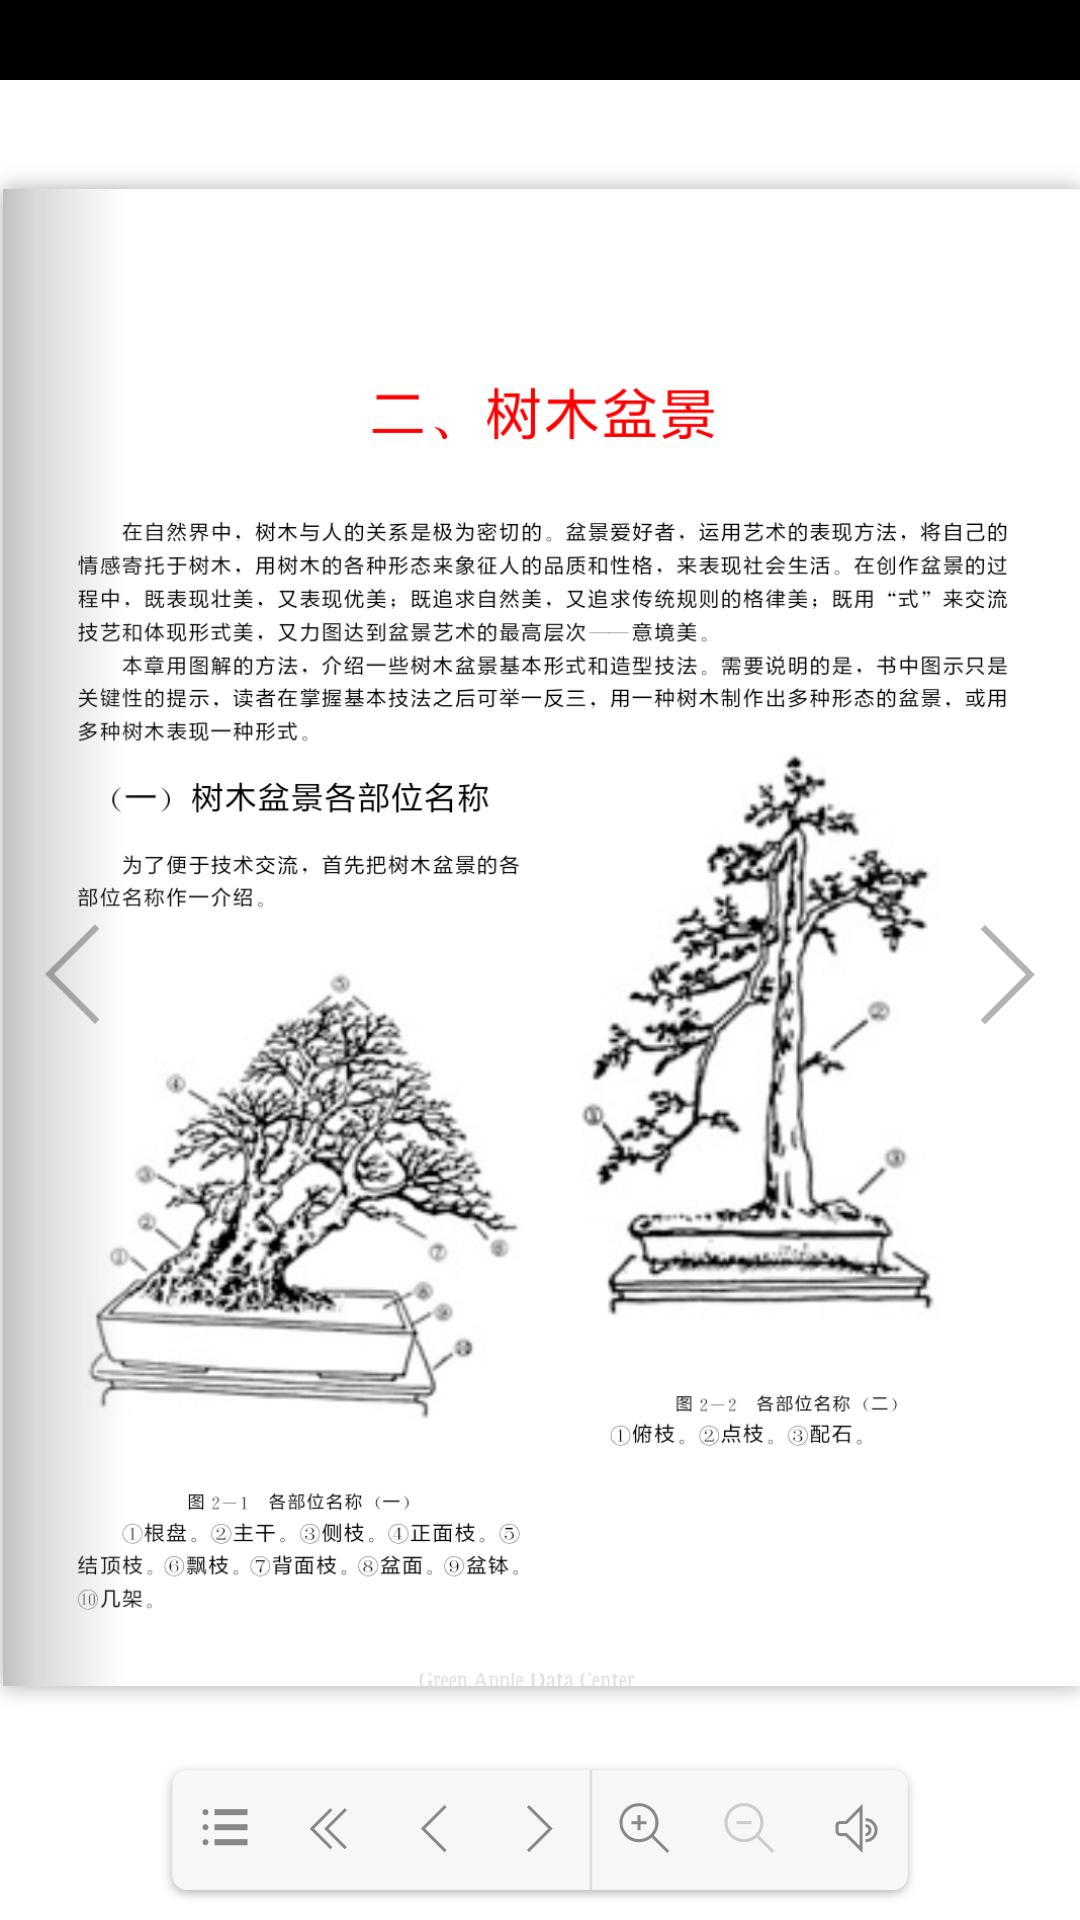 中国盆景欣赏与创作for Android Apk Download